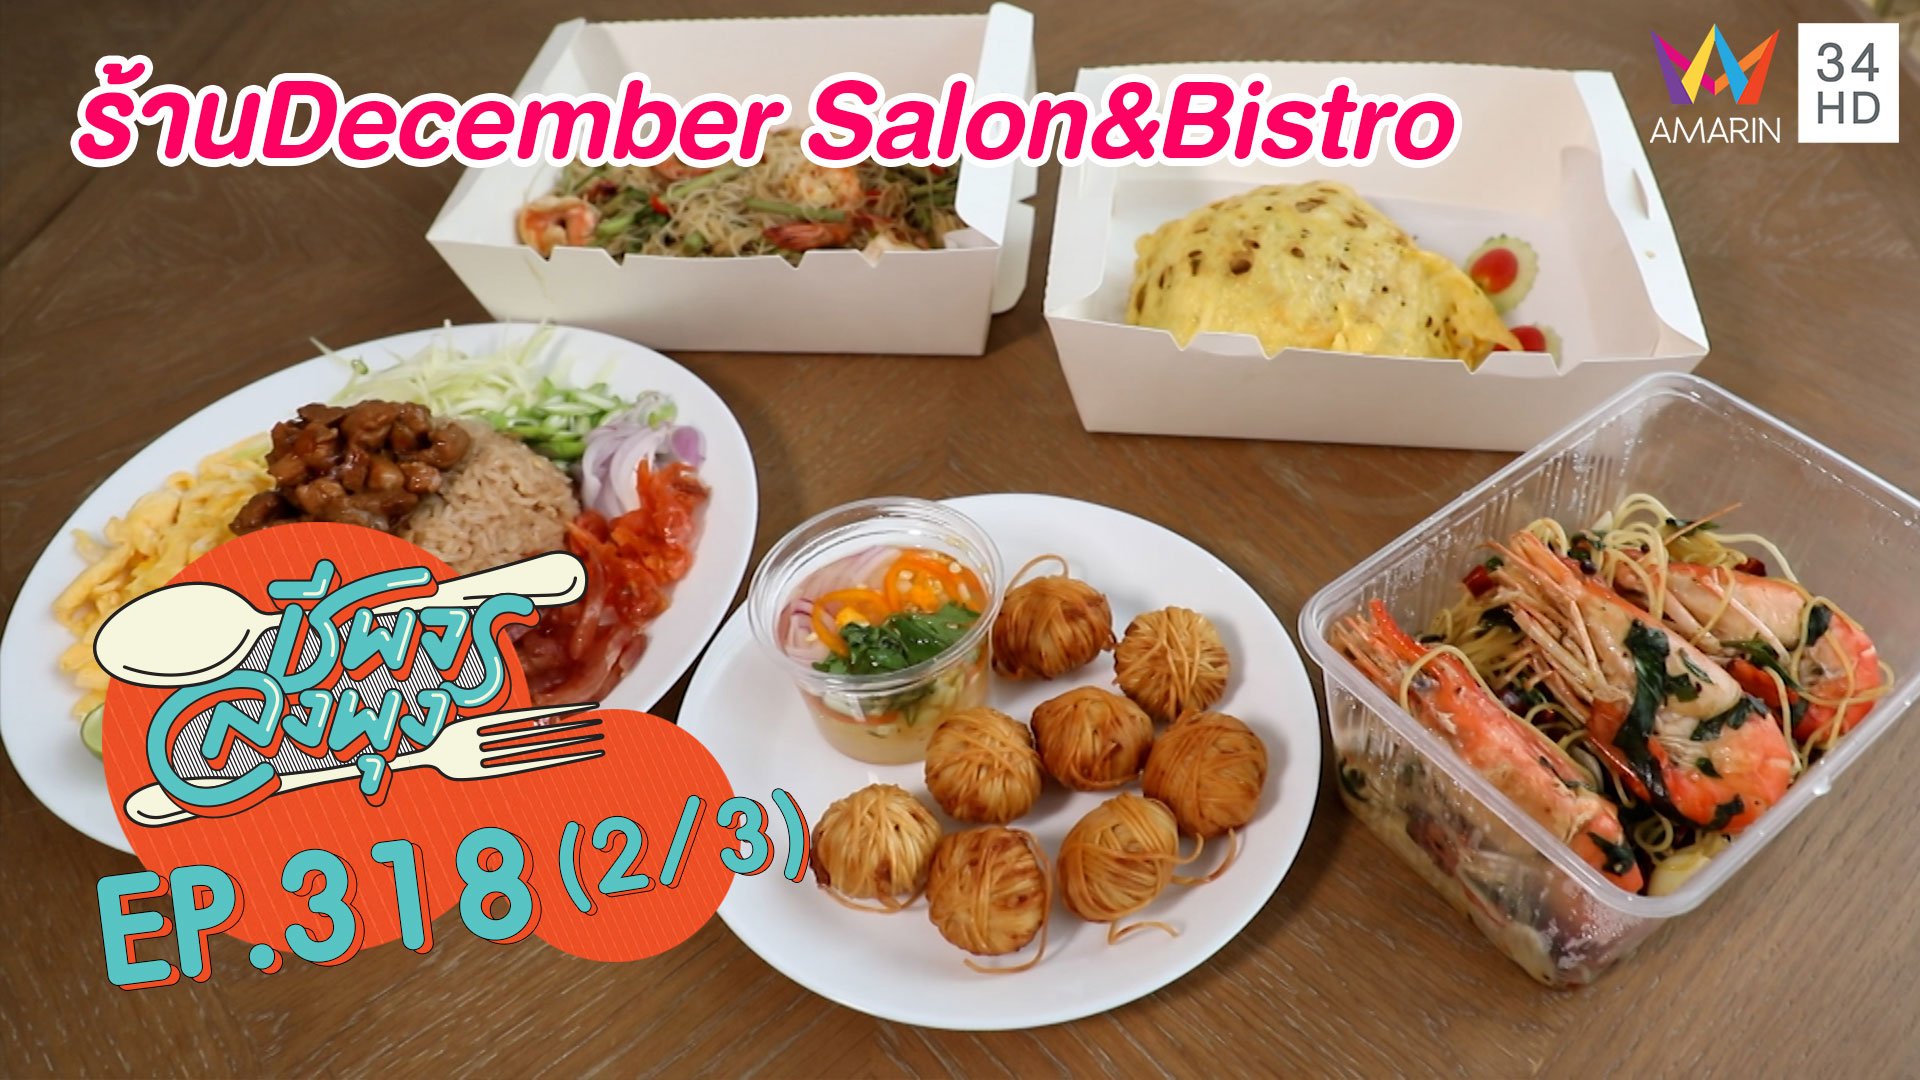 ทีเด็ดอาหารจานเดียว @ ร้าน December Salon & Bistro | ชีพจรลงพุง | 22 ส.ค. 64 (2/3) | AMARIN TVHD34